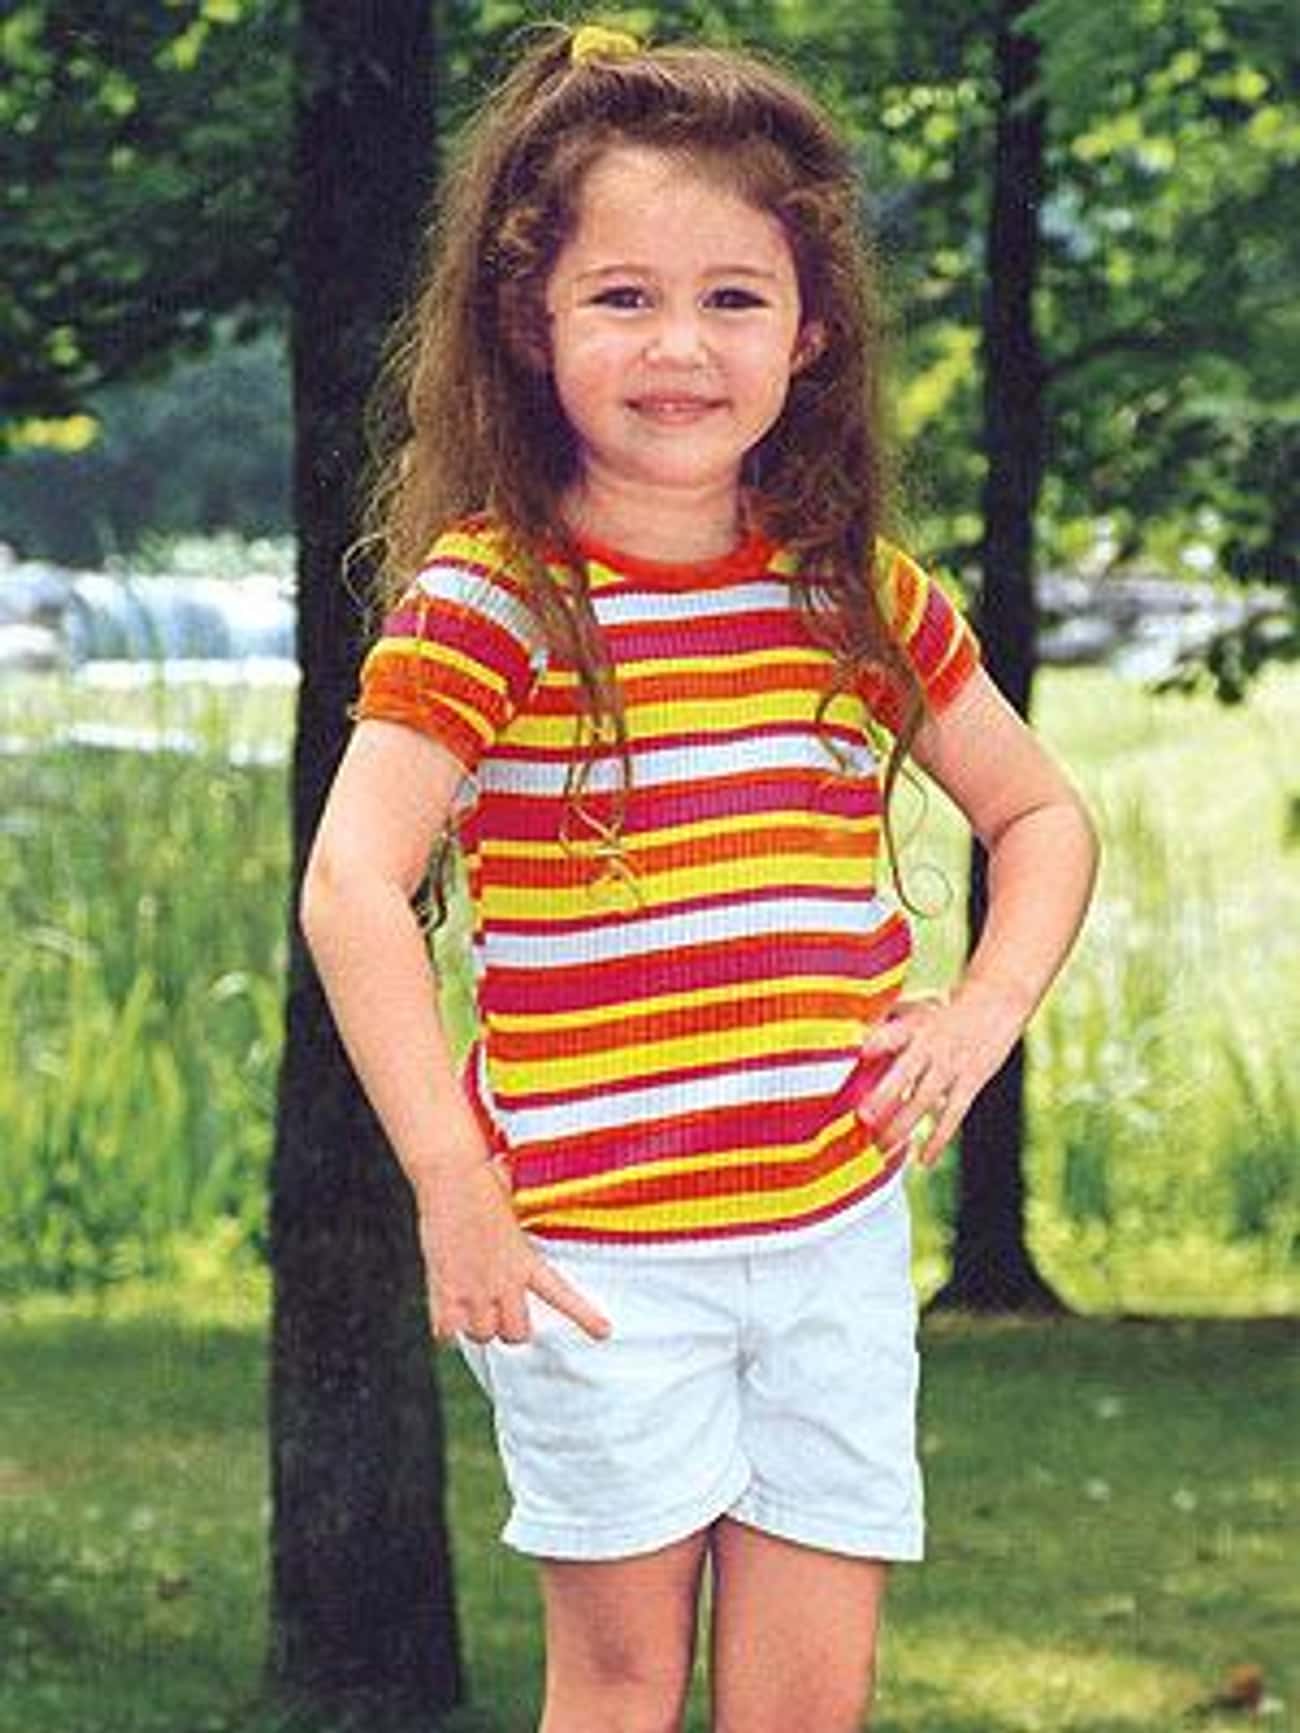 Miley Cyrus at Age 5